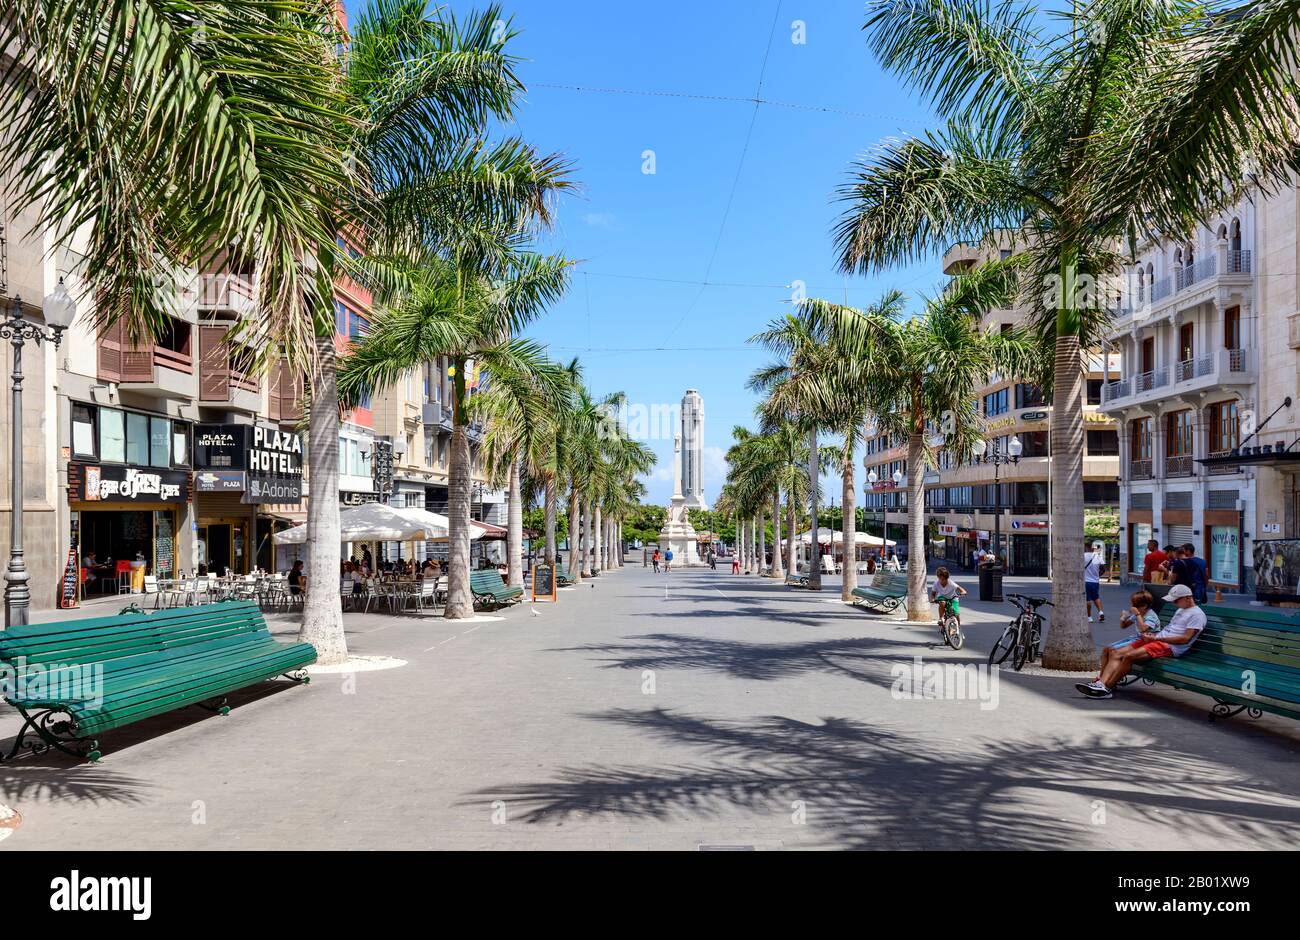 Plaza de la Candelaria. Une pittoresque rue piétonne bordée de palmiers, Santa Cruz de Tenerife, îles Canaries. Banque D'Images